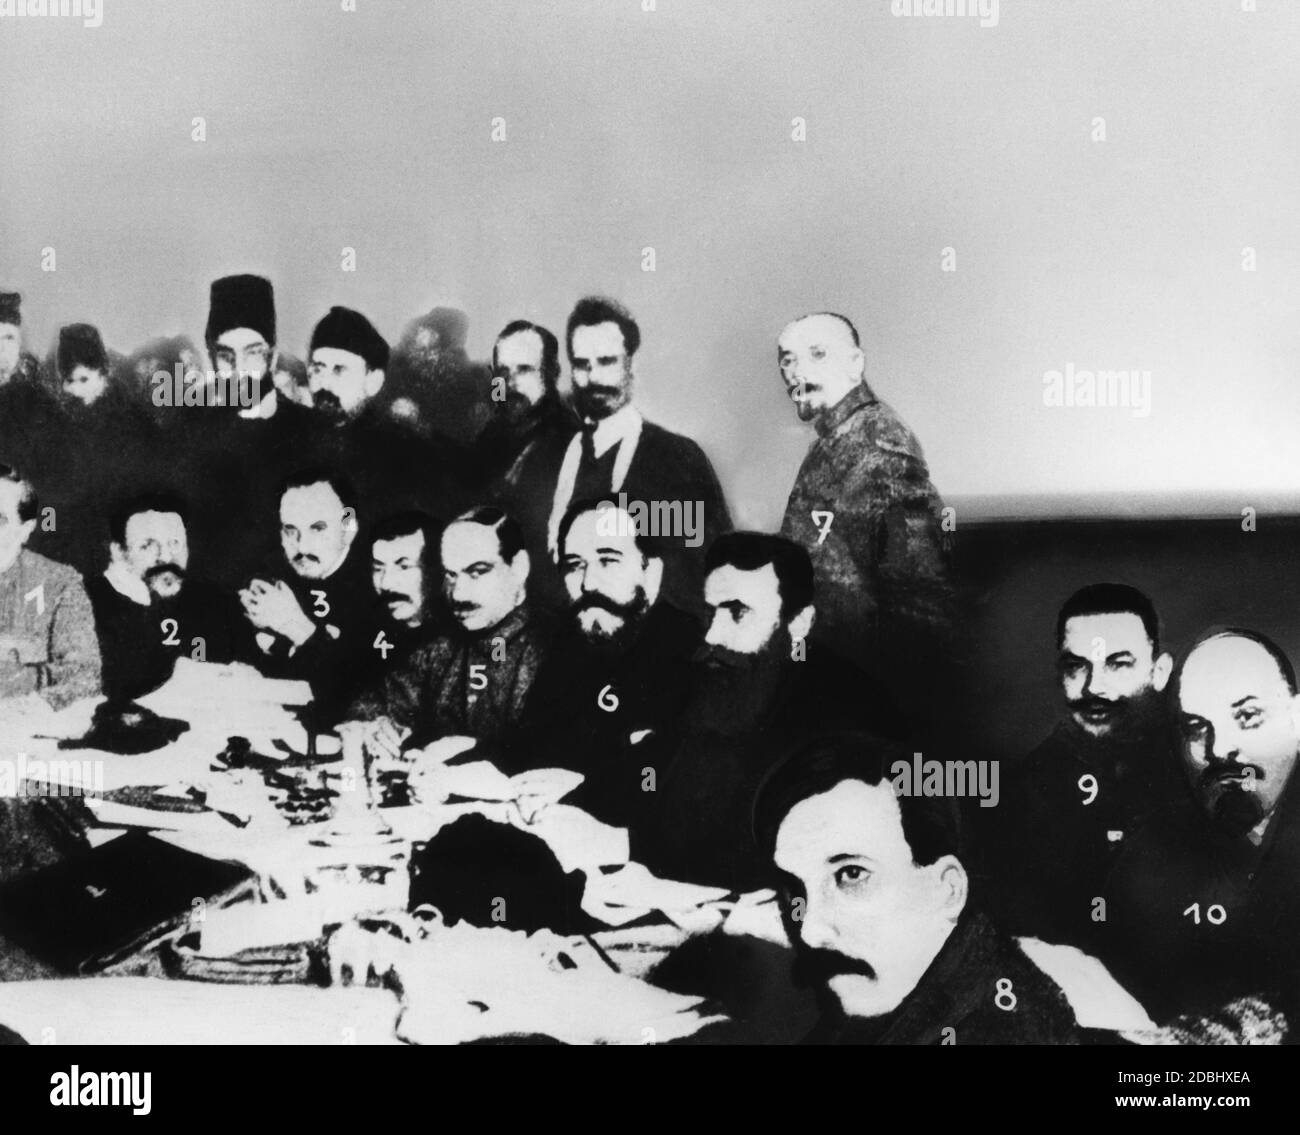 From left: 1. Vyshinsky, 2. Kalinin, 3. Bukharin, 4. Stalin, 5. Yagoda, 6. Kamenev, 7. Krestinsky, 8. Rykov, 9. Voroshilov, 10. Lenin. After Stalin's victory over Bukharin and Zinoviev after Lenin's death, Bukharin, Yagoda, Kamenev, Krestinsky and Rykov fell victim to despotism during the Stalinist terror. Stock Photo